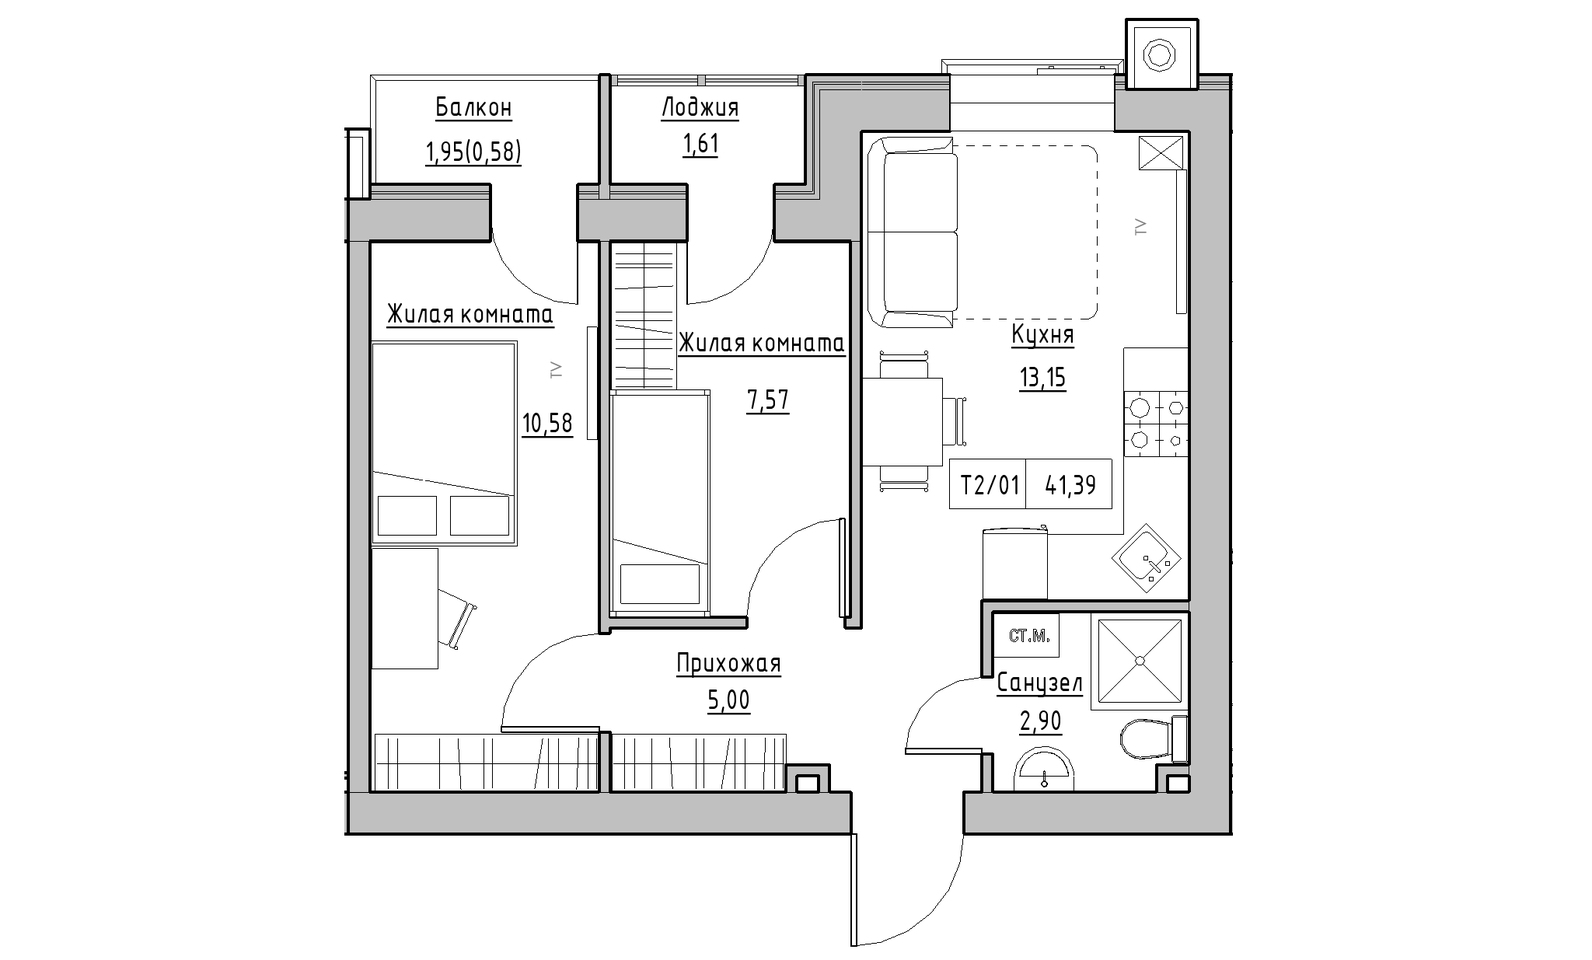 Планировка 2-к квартира площей 41.39м2, KS-014-04/0005.